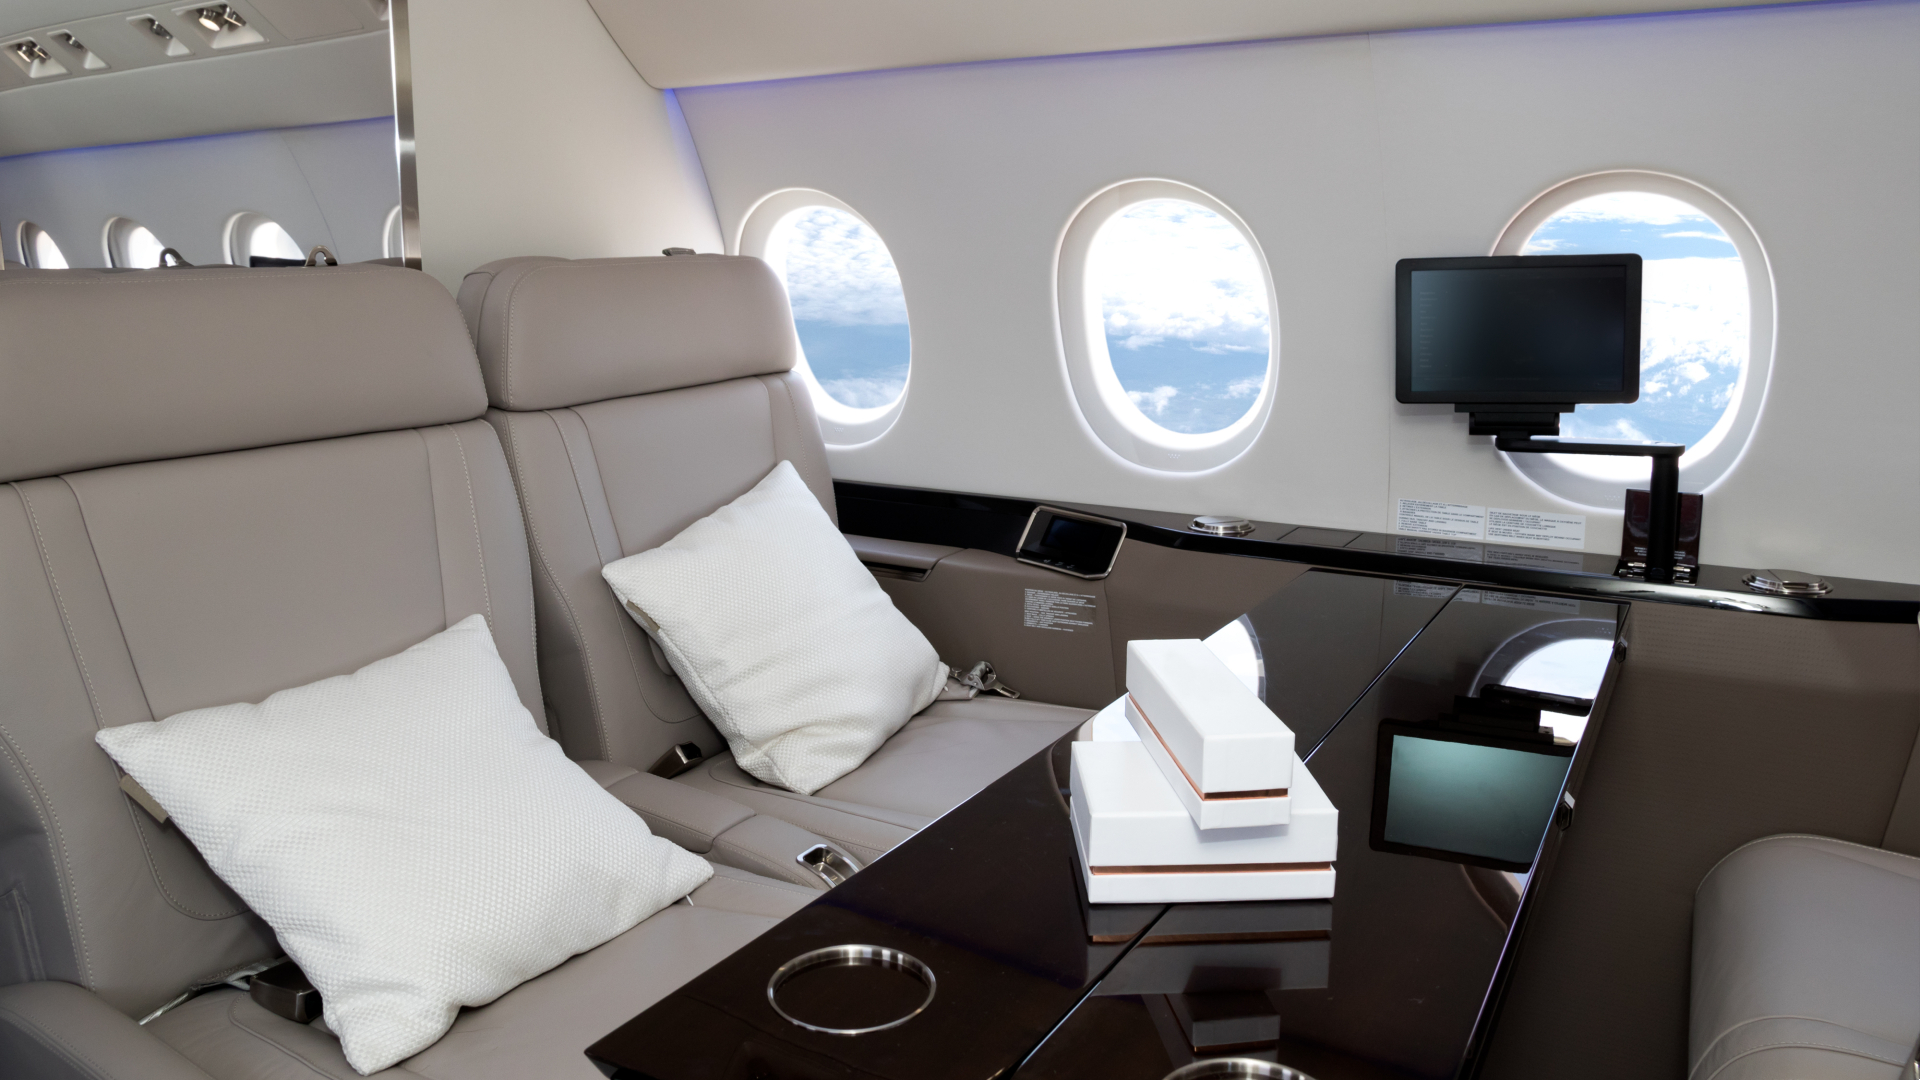 Interior of luxury jet